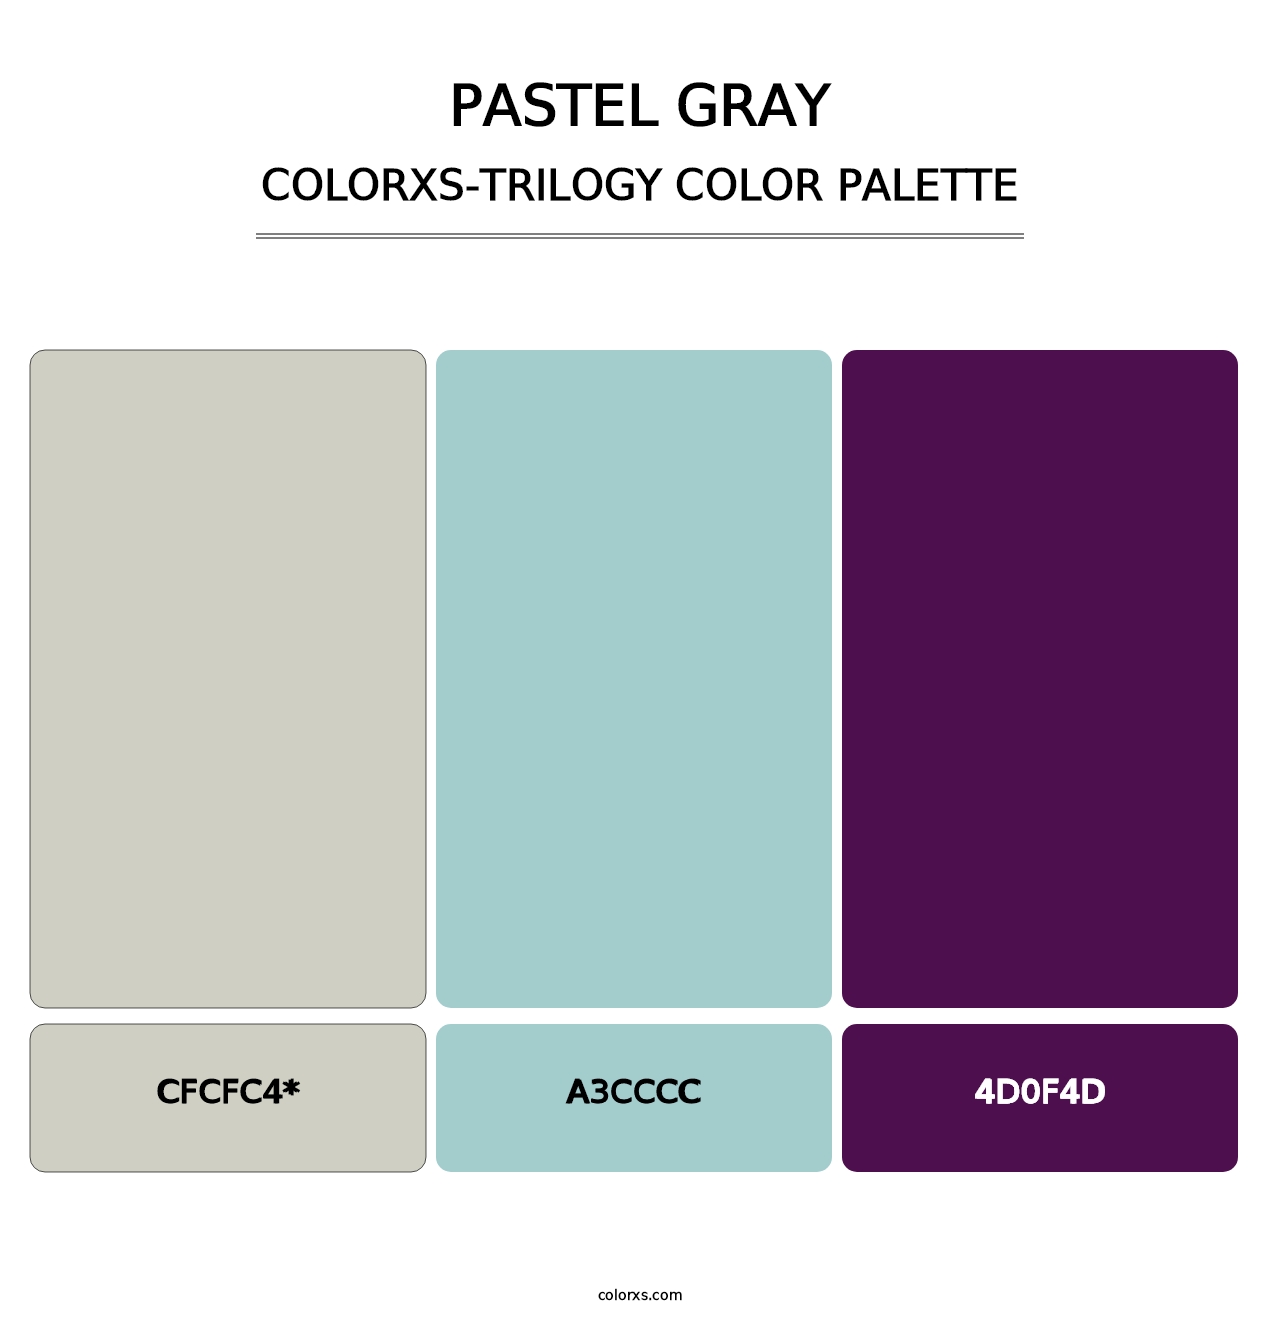 Pastel Gray - Colorxs Trilogy Palette